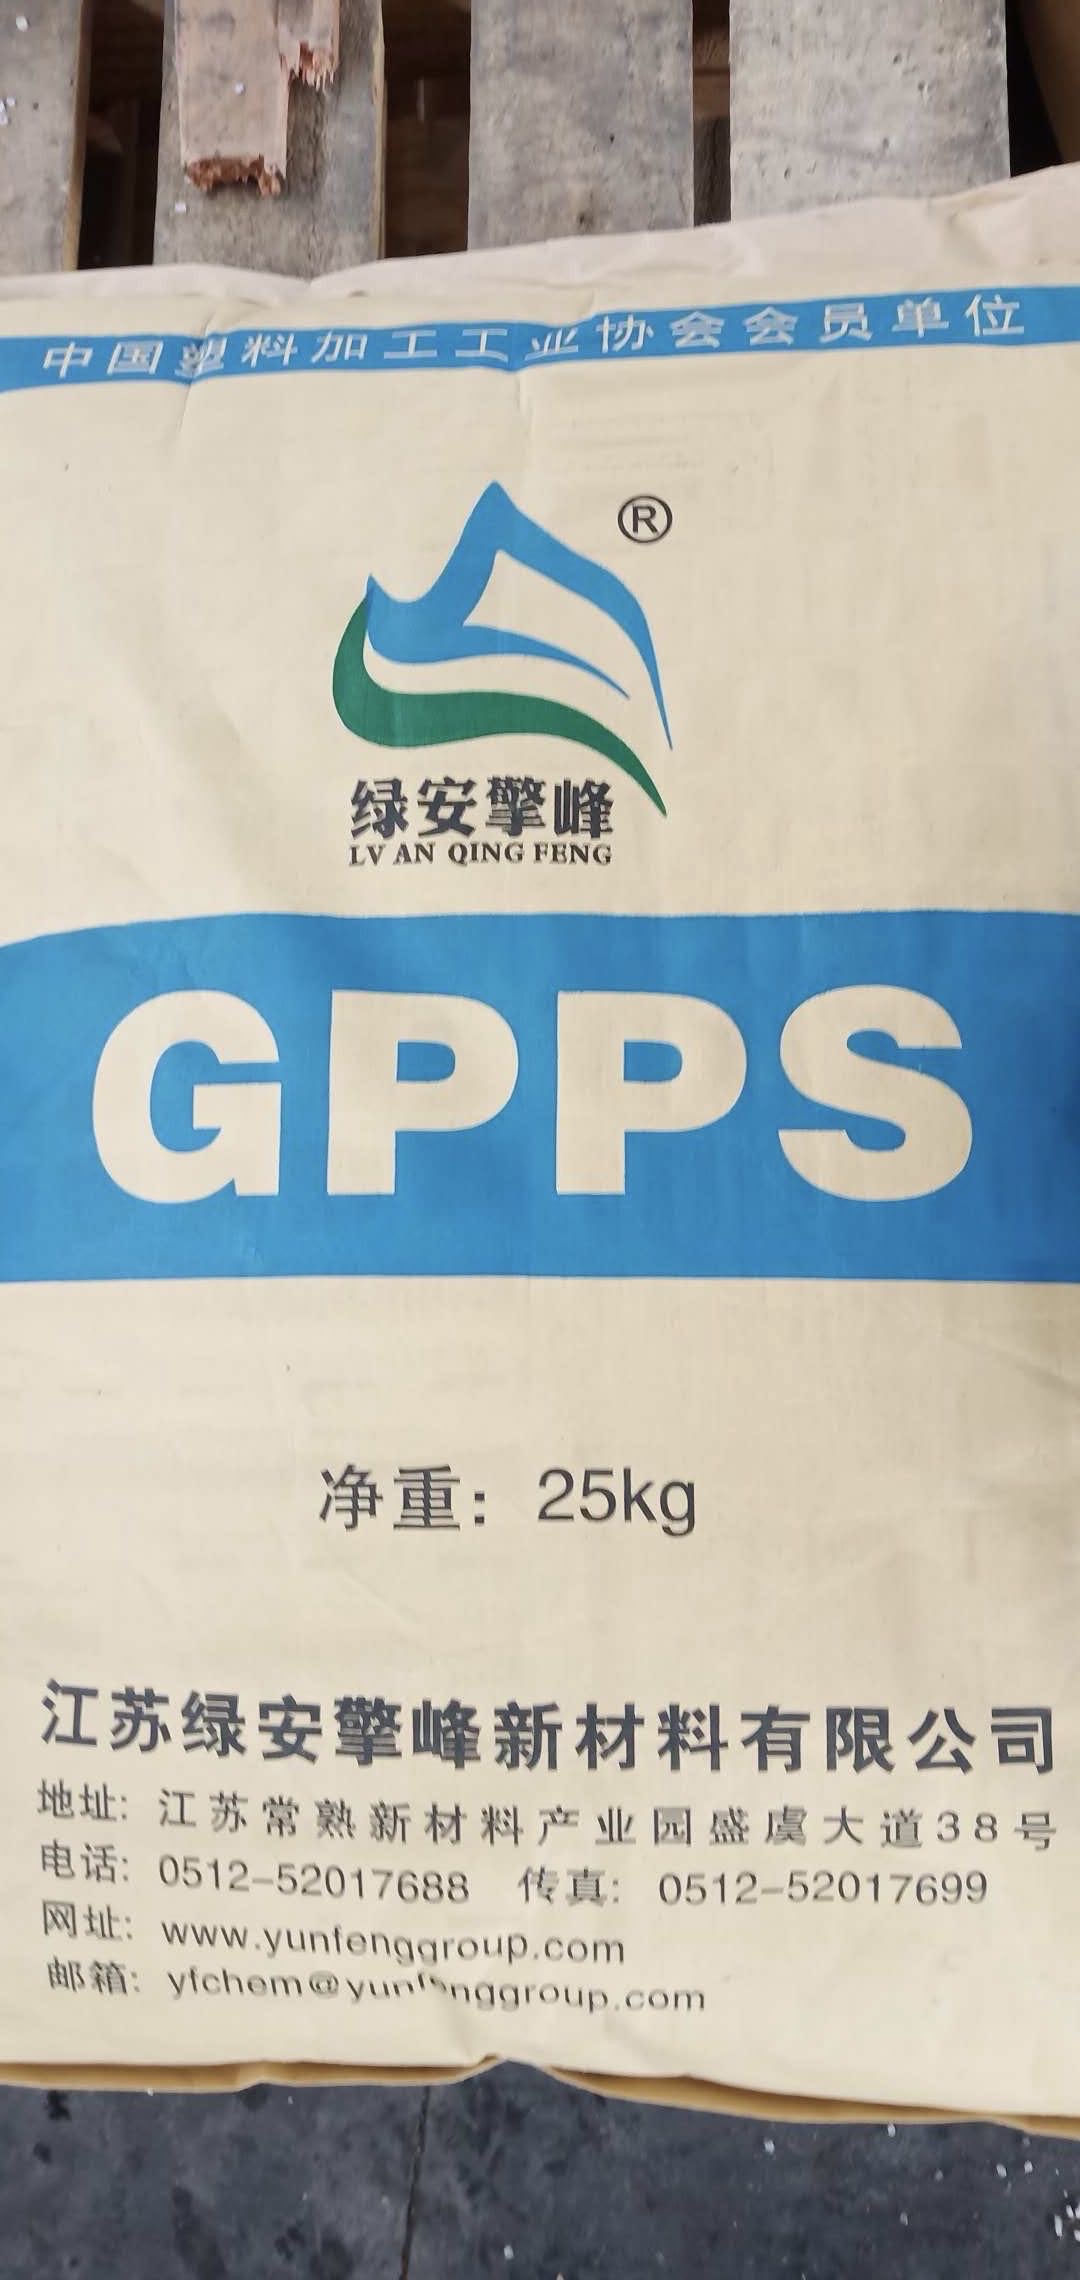 GPPS 绿安擎峰GP-525 白色透明通用级塑料图